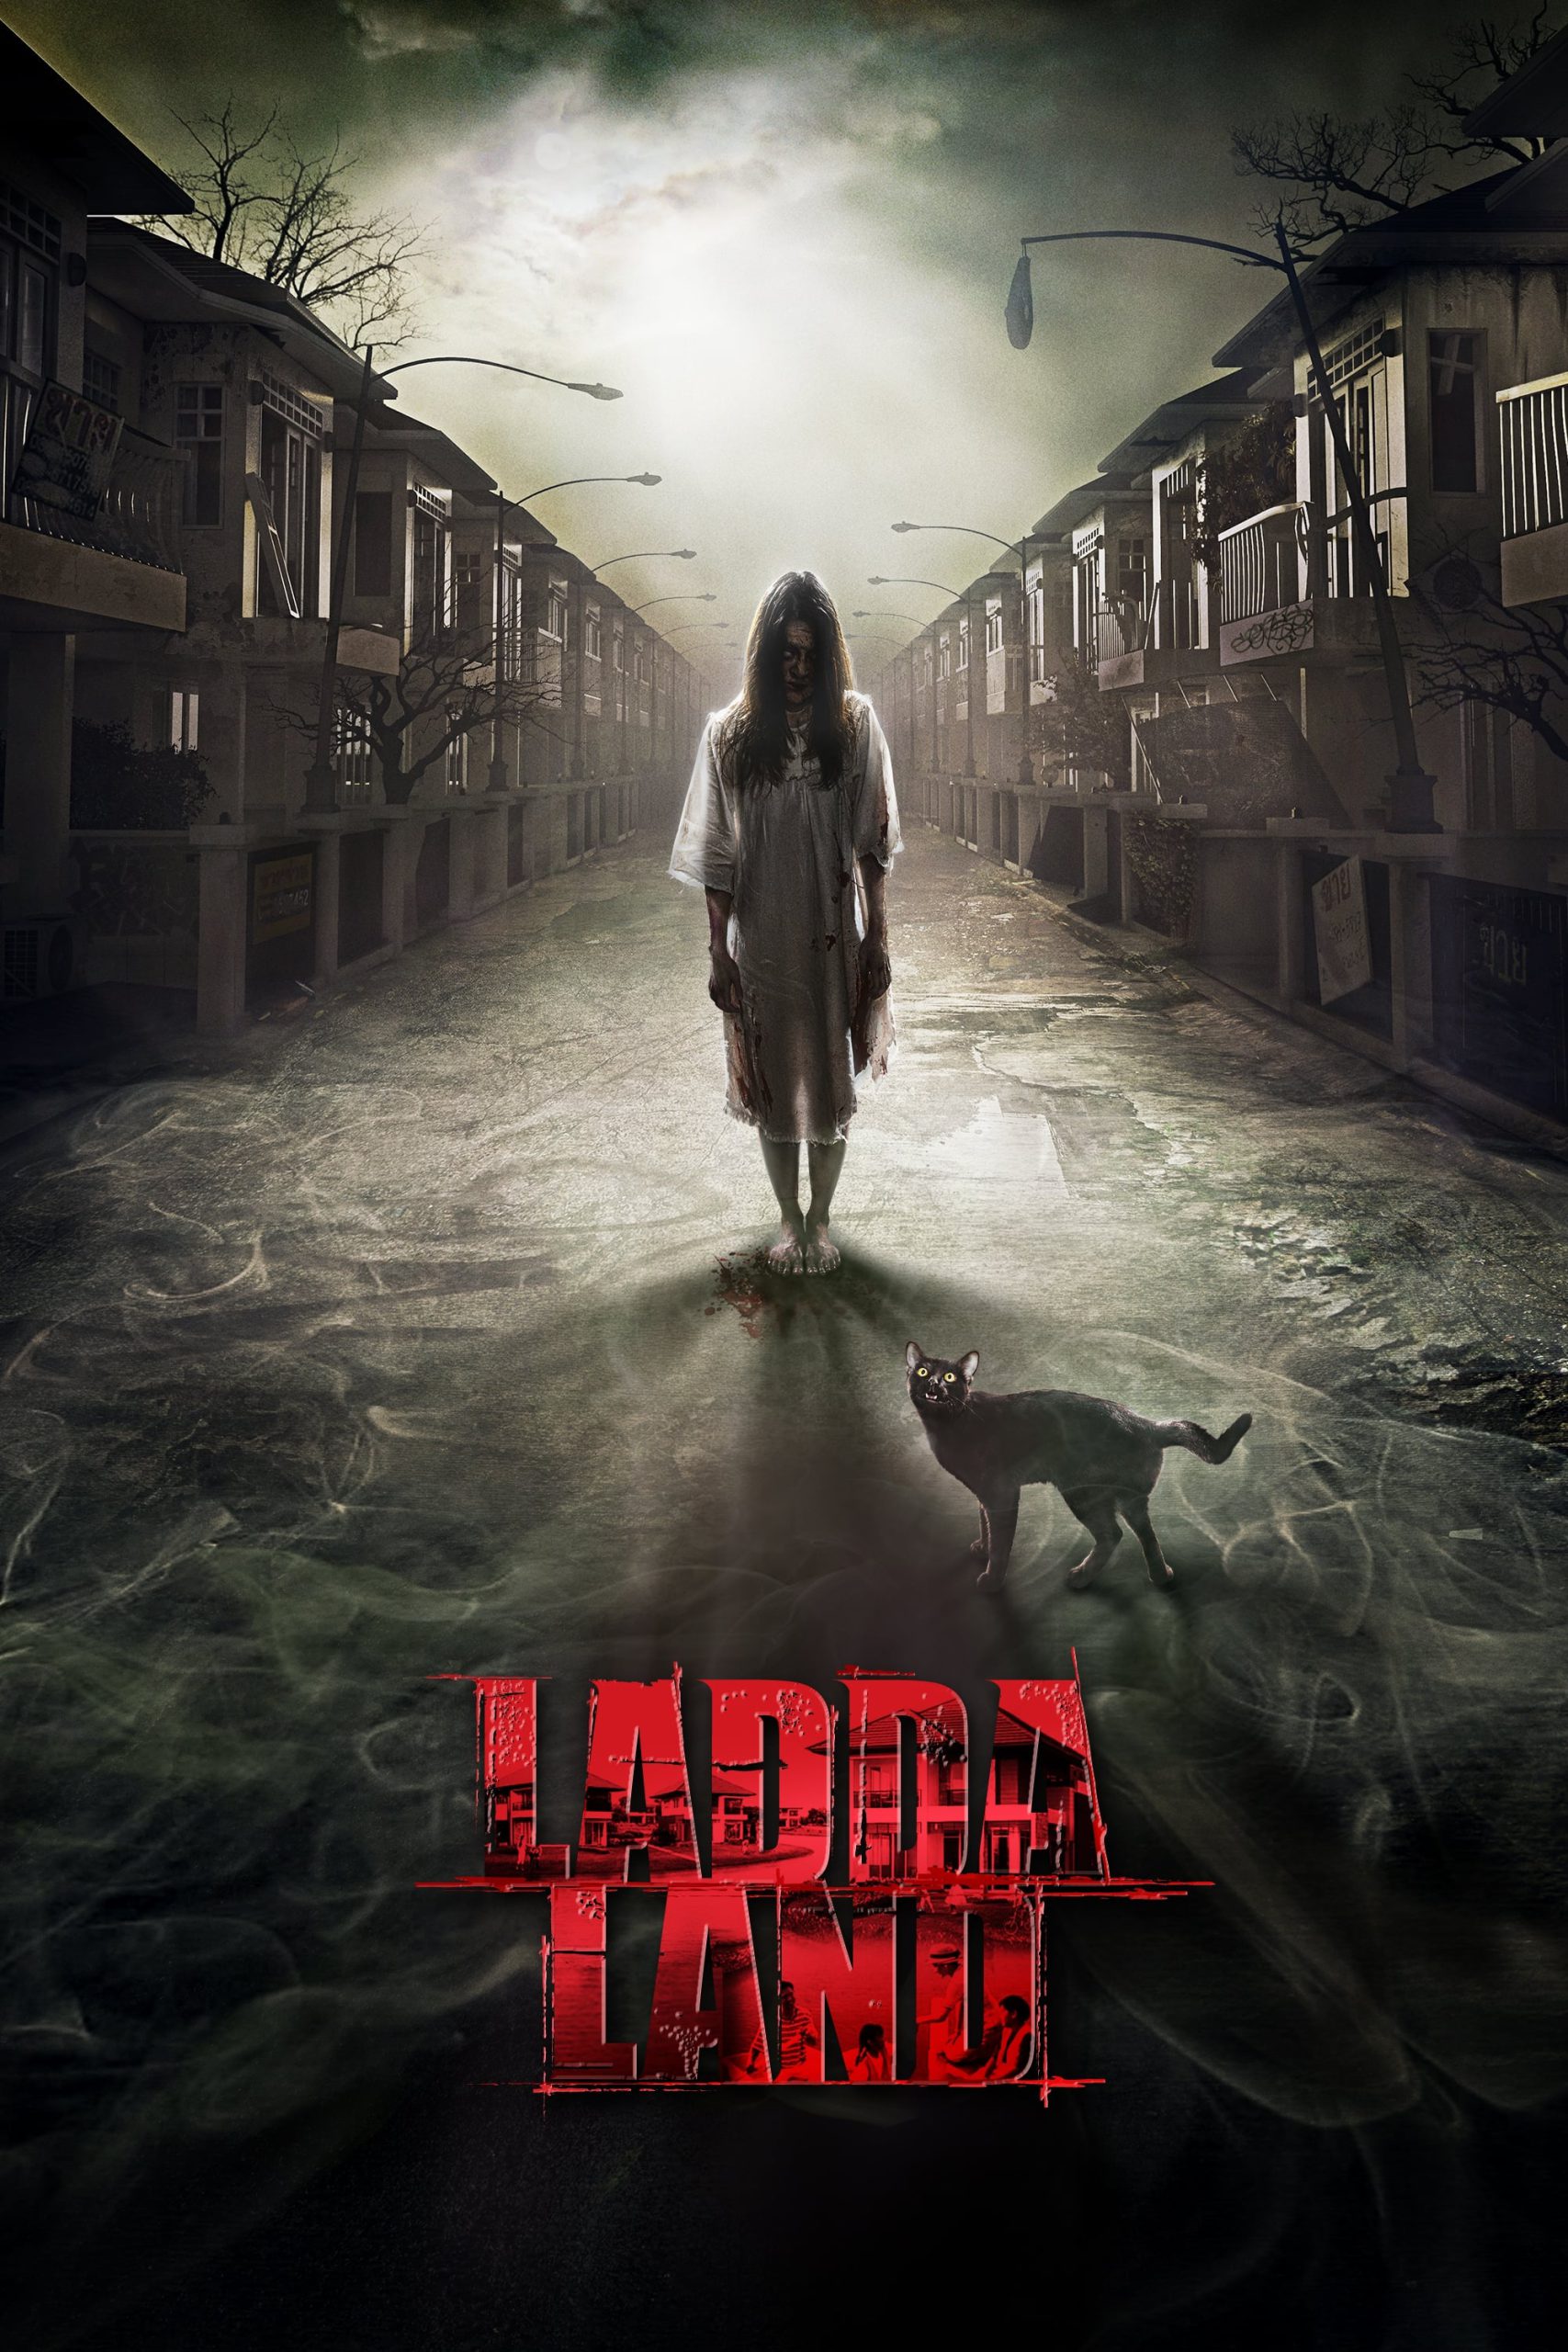 Ladda Land [Sub-ITA] (2011)